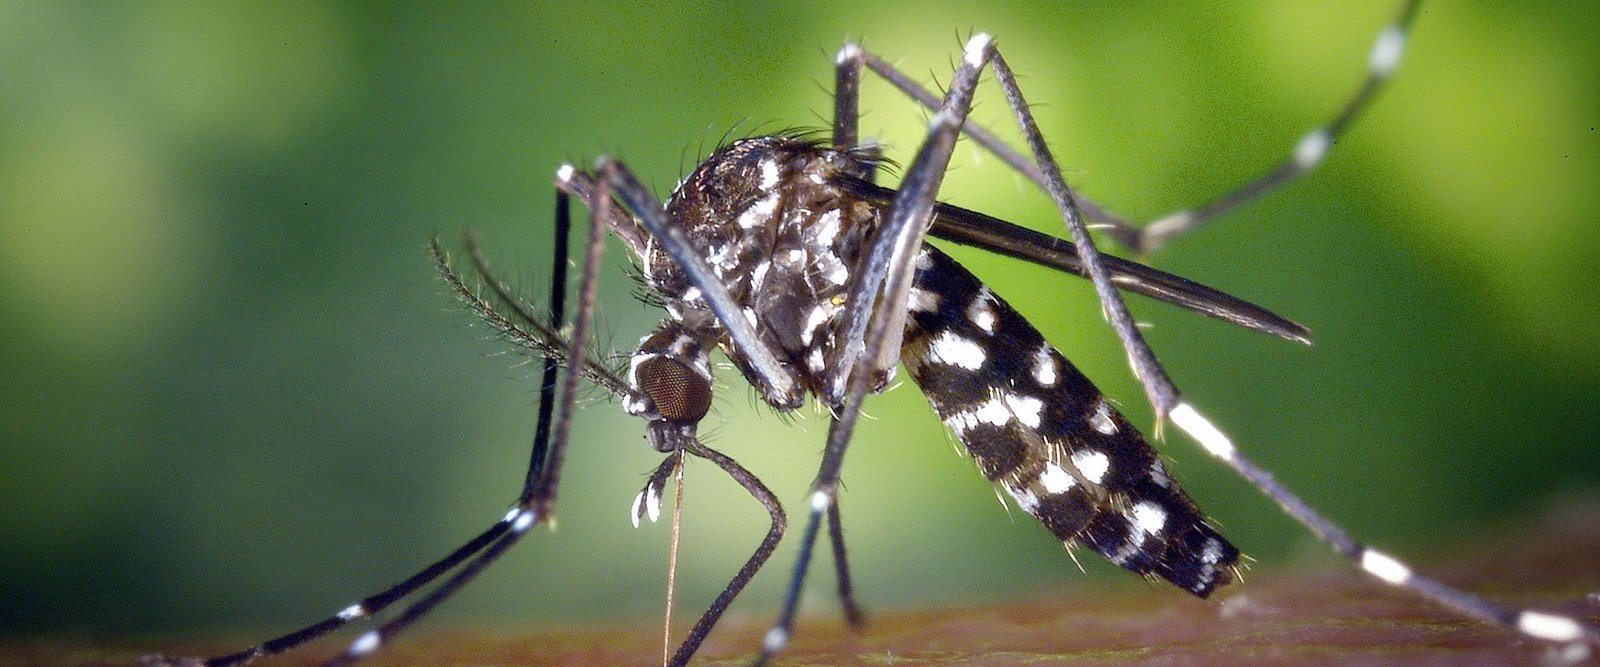 Llega el frío: ¿A qué temperatura muere el mosquito del dengue? | DIARIO LA  CALLE